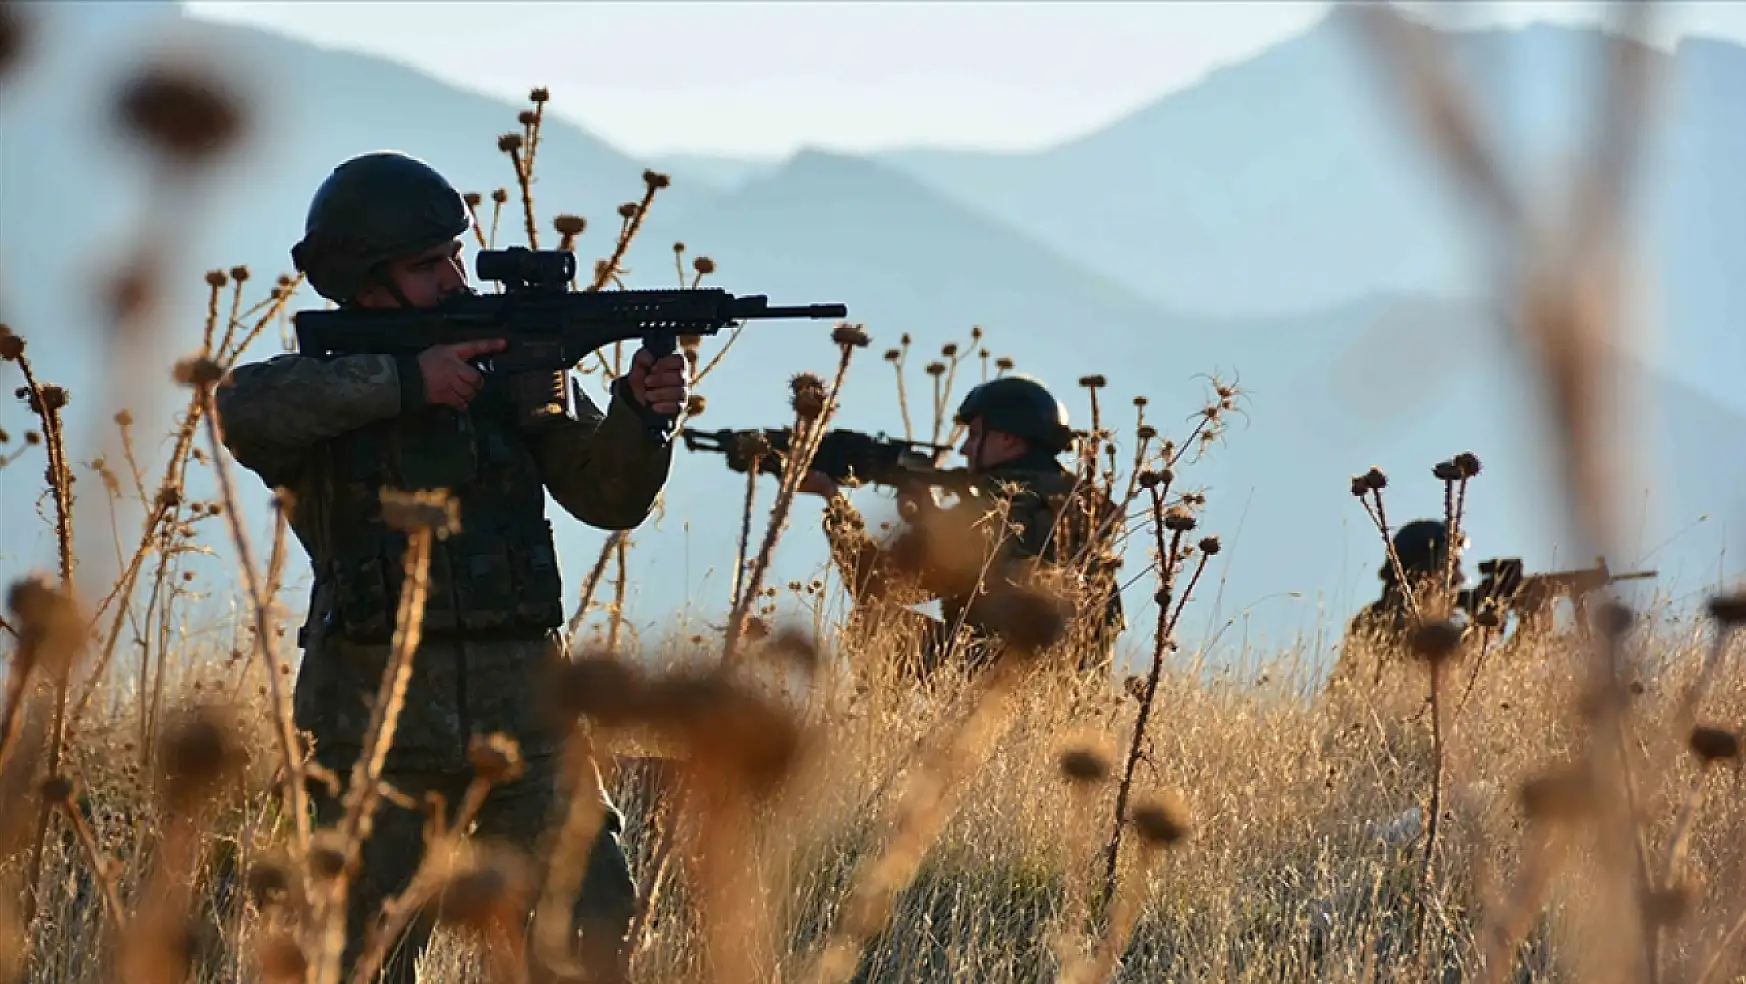 MSB Suriye'nin kuzeyinde 7 PKK/YPG'li terörist etkisiz hale getirildiğini duyurdu